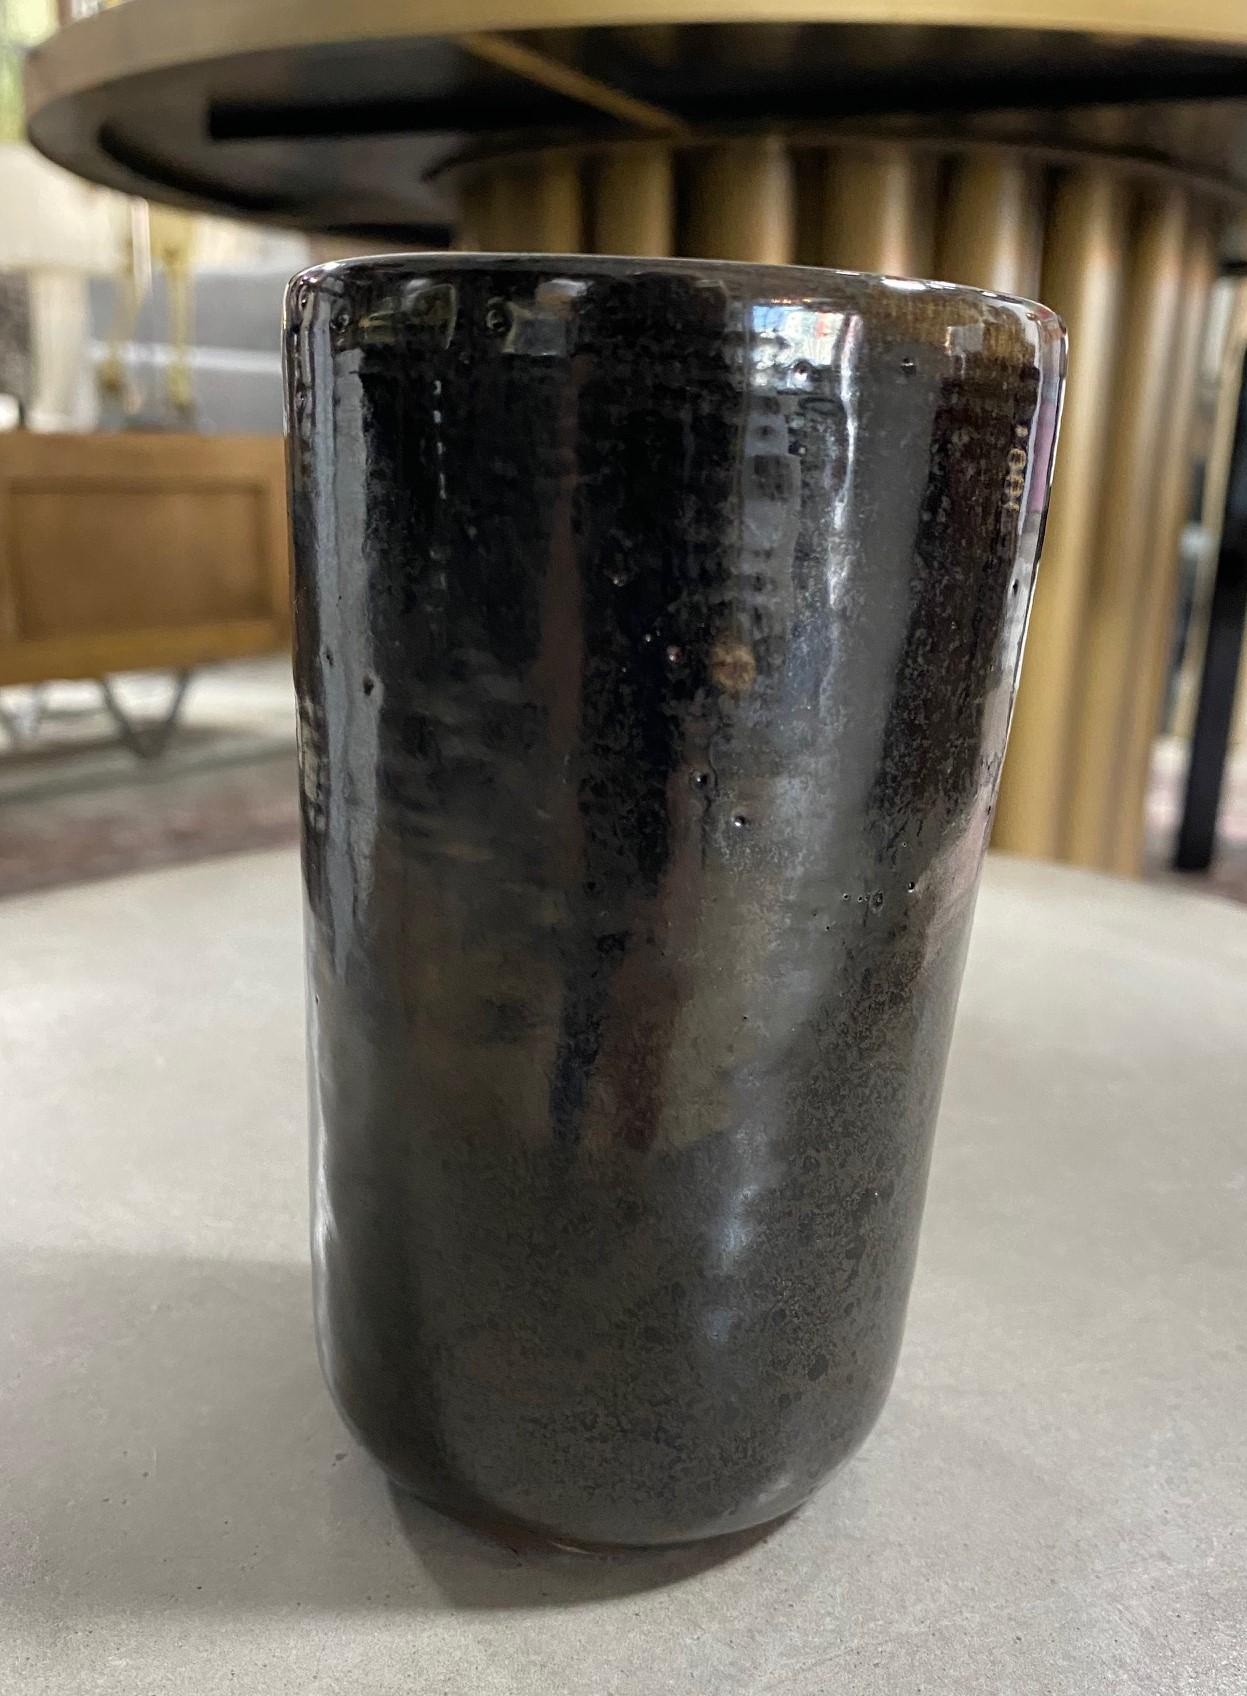 Merveilleux travail du célèbre potier du Midwest Eugene Deutch, né en Hongrie.

Ce vase magnifiquement émaillé présente une glaçure sombre et riche qui s'égoutte librement à l'intérieur de l'œuvre. 

Signé et daté (1950) sur la face